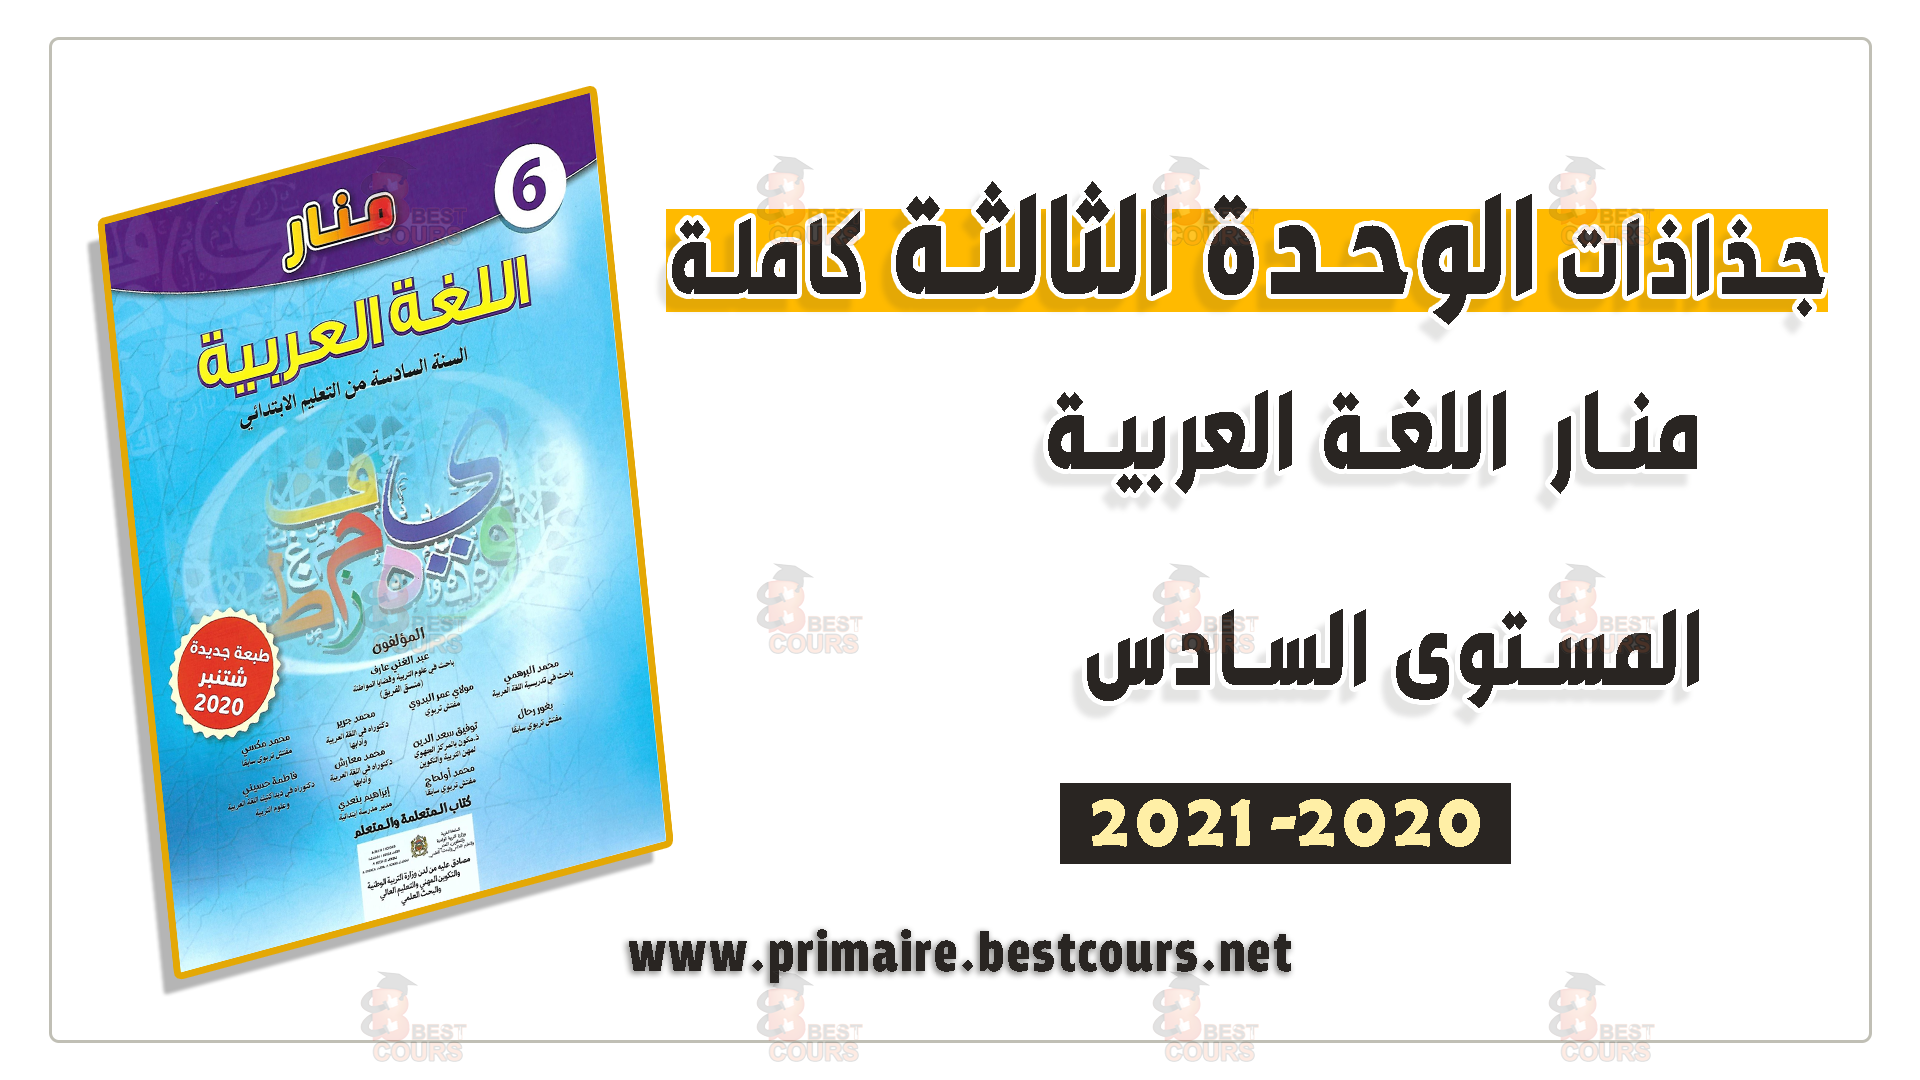 جذاذت الوحدة الثالثة منار اللغة العربية المستوى السادس 2020-2021 :